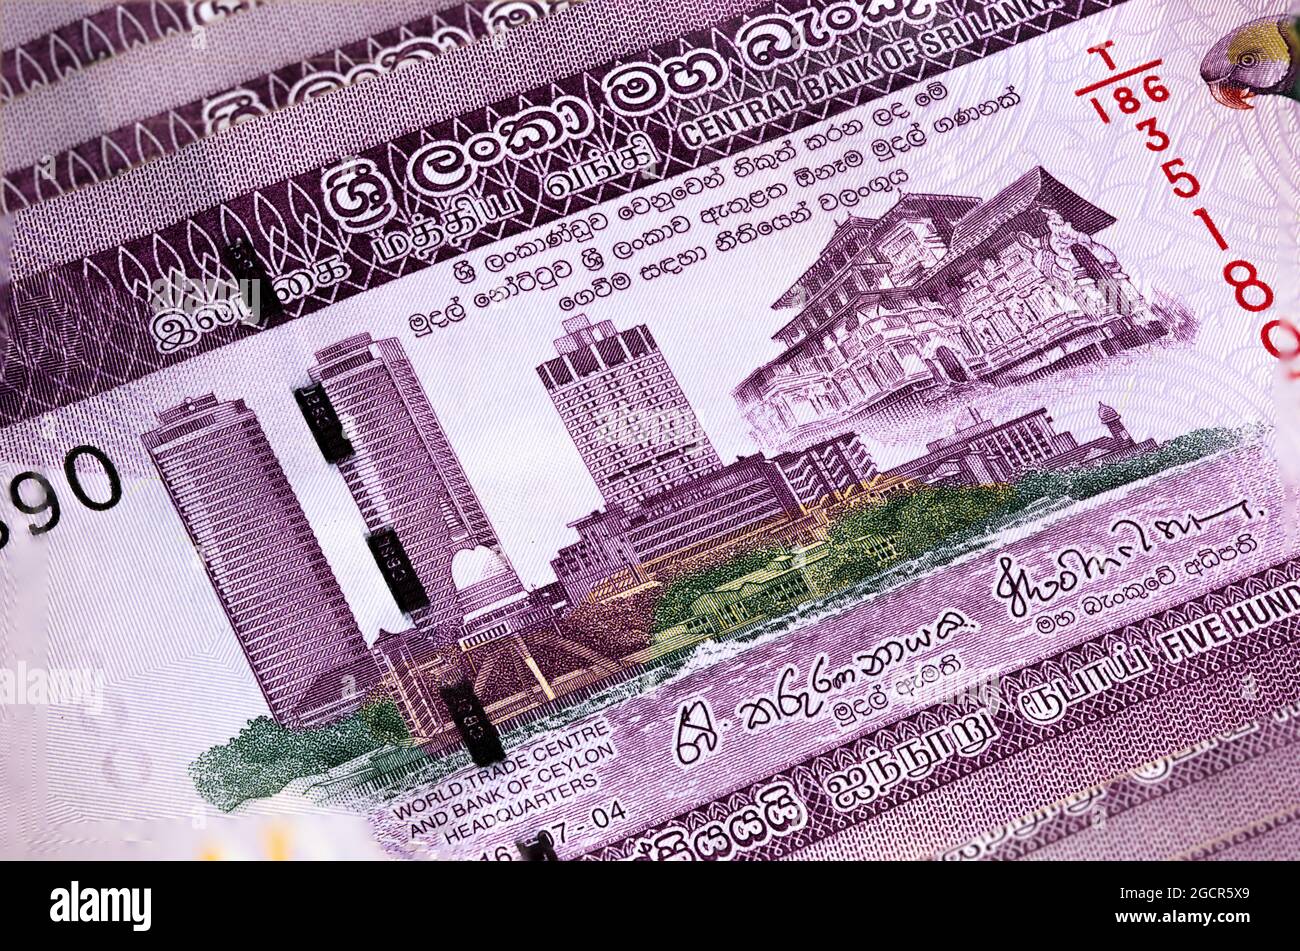 Macro-photographie de 500 roupies sri lankaises ou Rupie. Monnaie papier de la république Sri Lanka. L'argent du pays de l'île. Gros plan sur le Sri coloré Banque D'Images